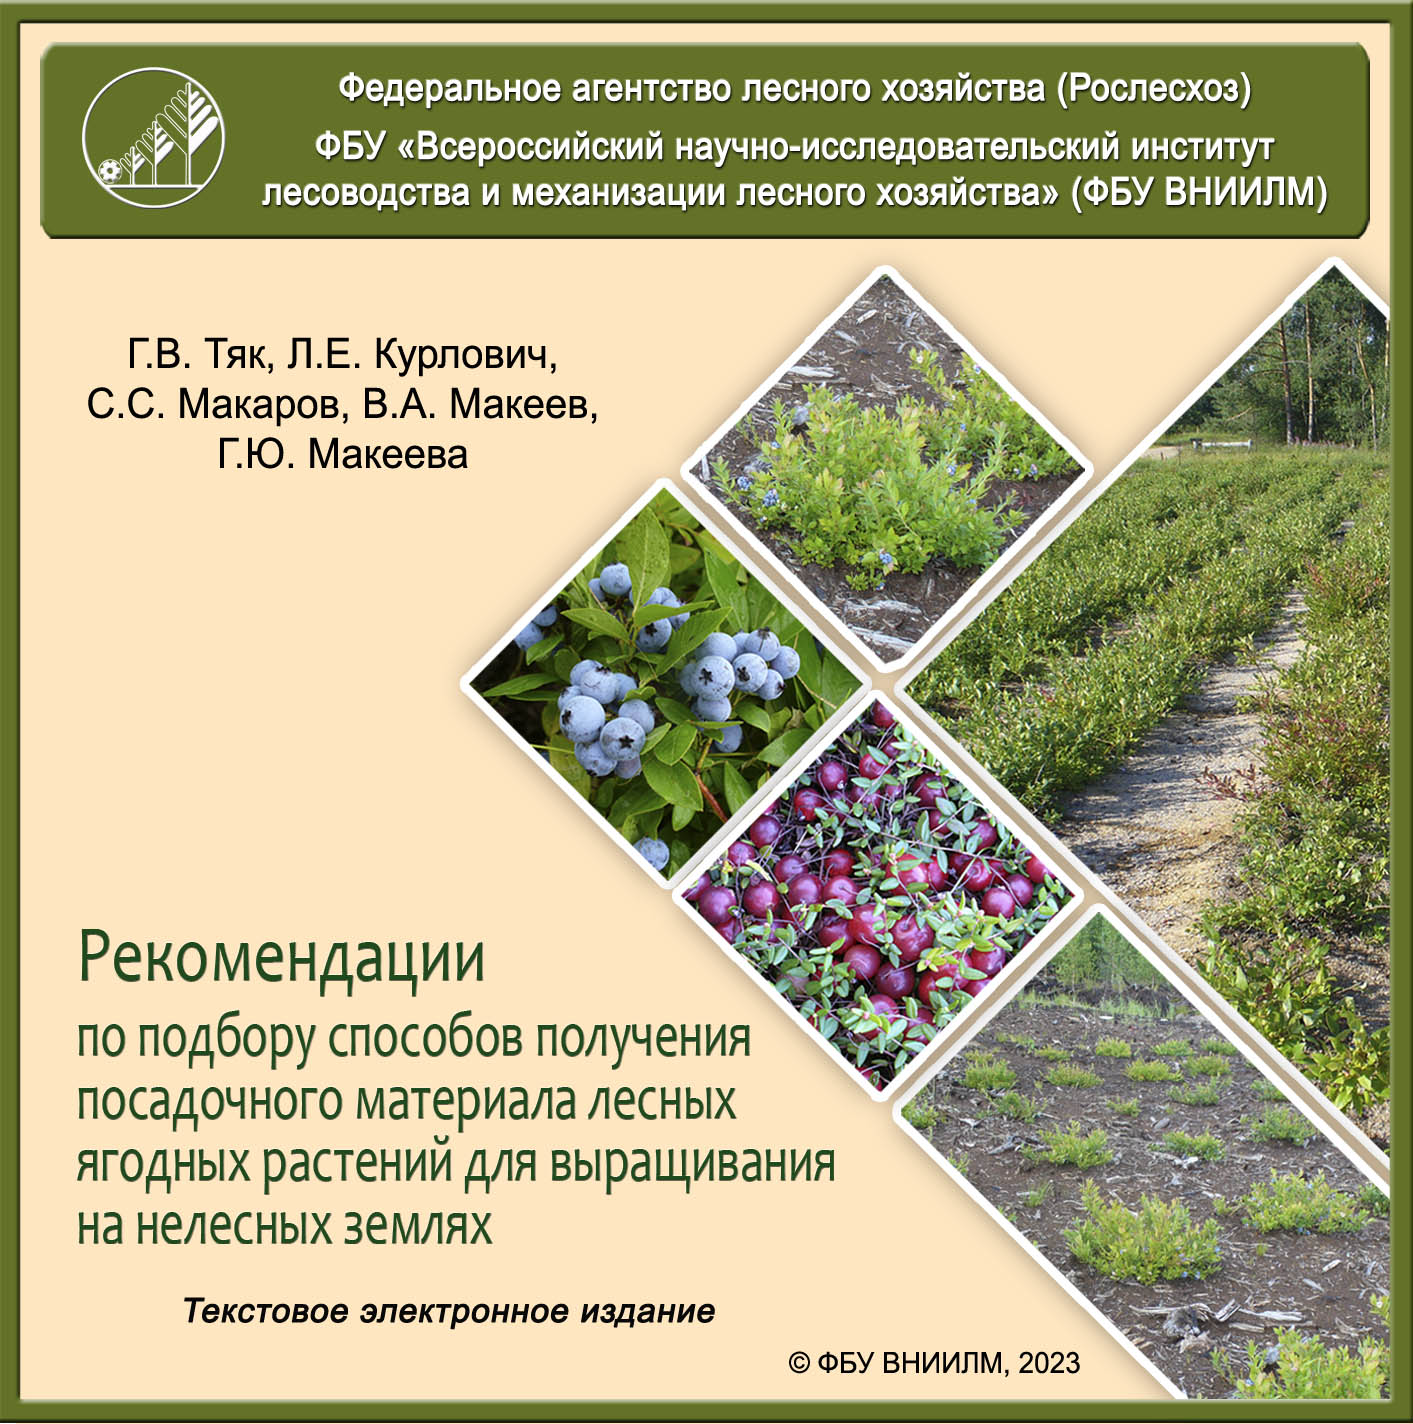 Рекомендации по подбору способов получения посадочного материала лесных ягодных растений для выращивания на нелесных землях